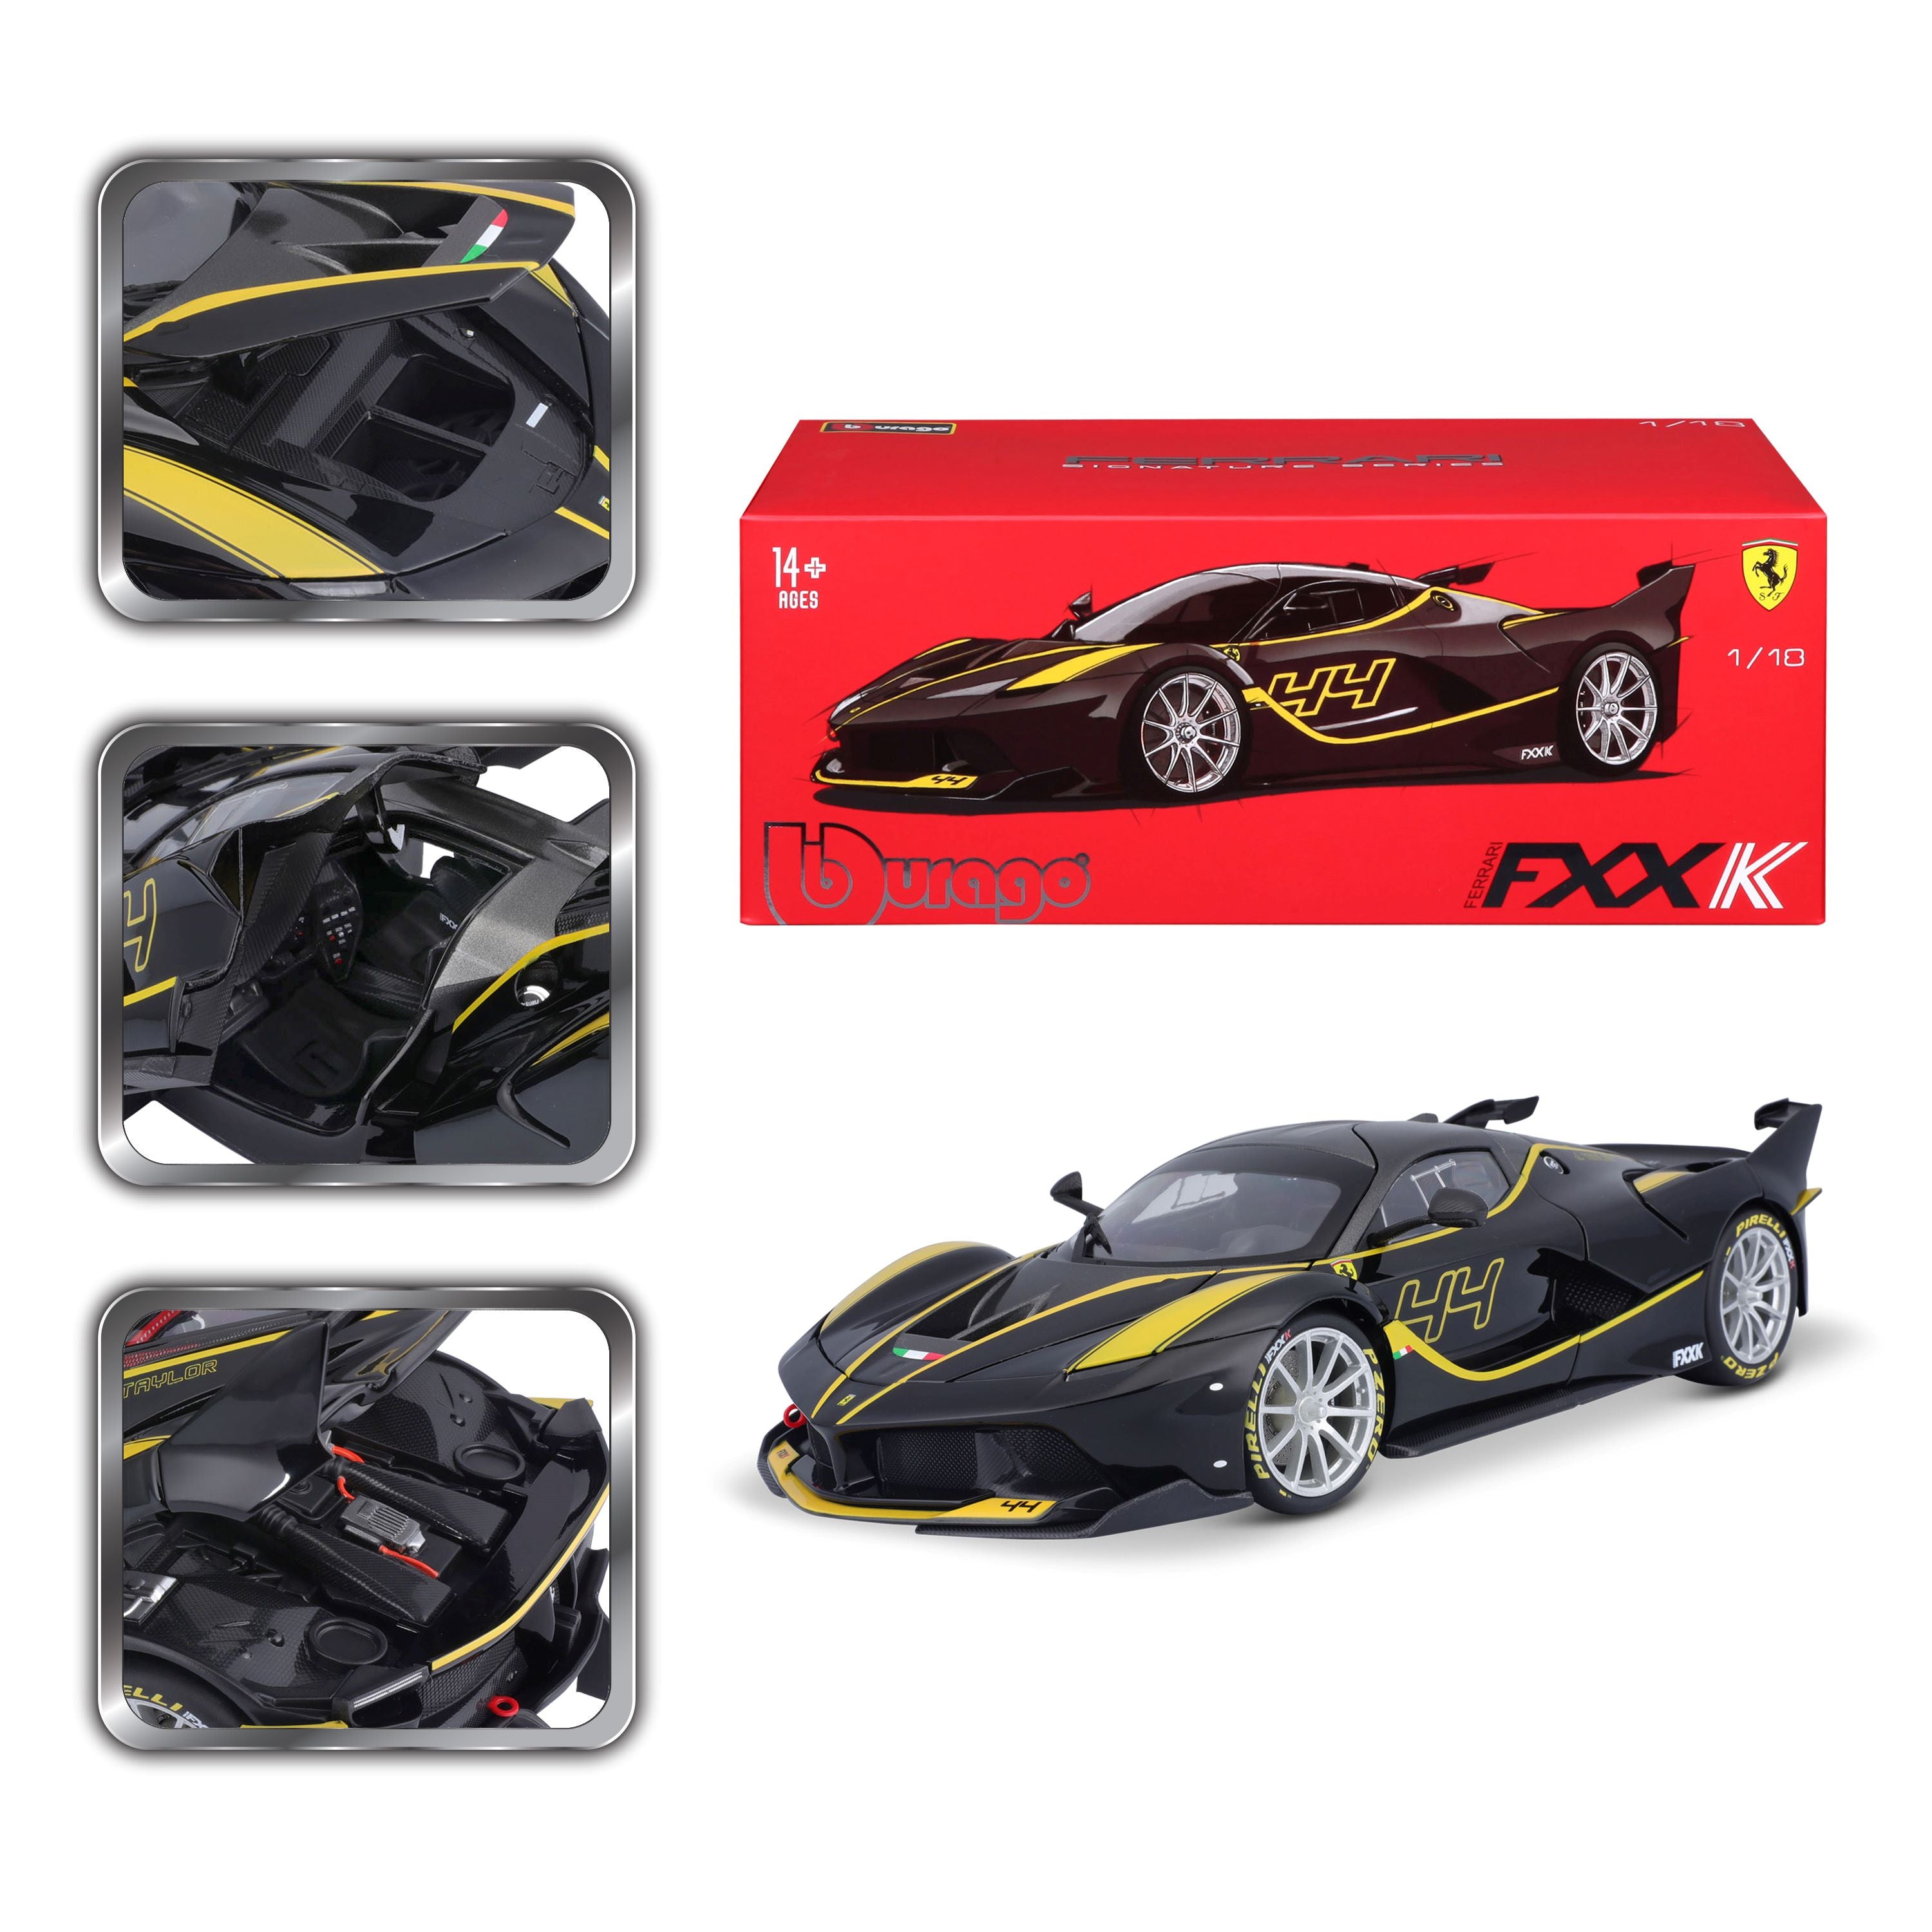 18-16907 - Bburago - 1:18 - Ferrari  Signature - Ferrari  FXX K - #44 - nero